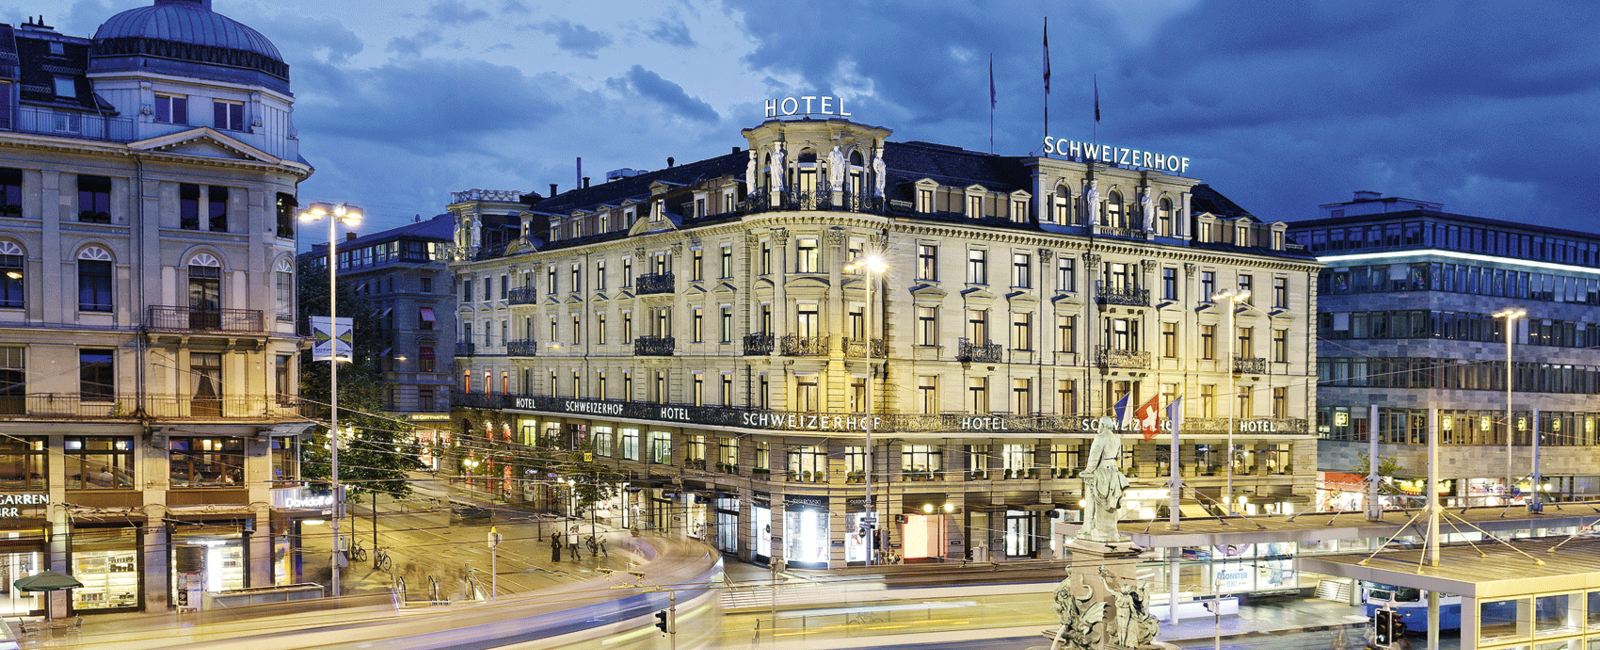 VERY SPECIAL HOTEL
 Hotel Schweizerhof Zuerich 
 „The summit of luxury“ 